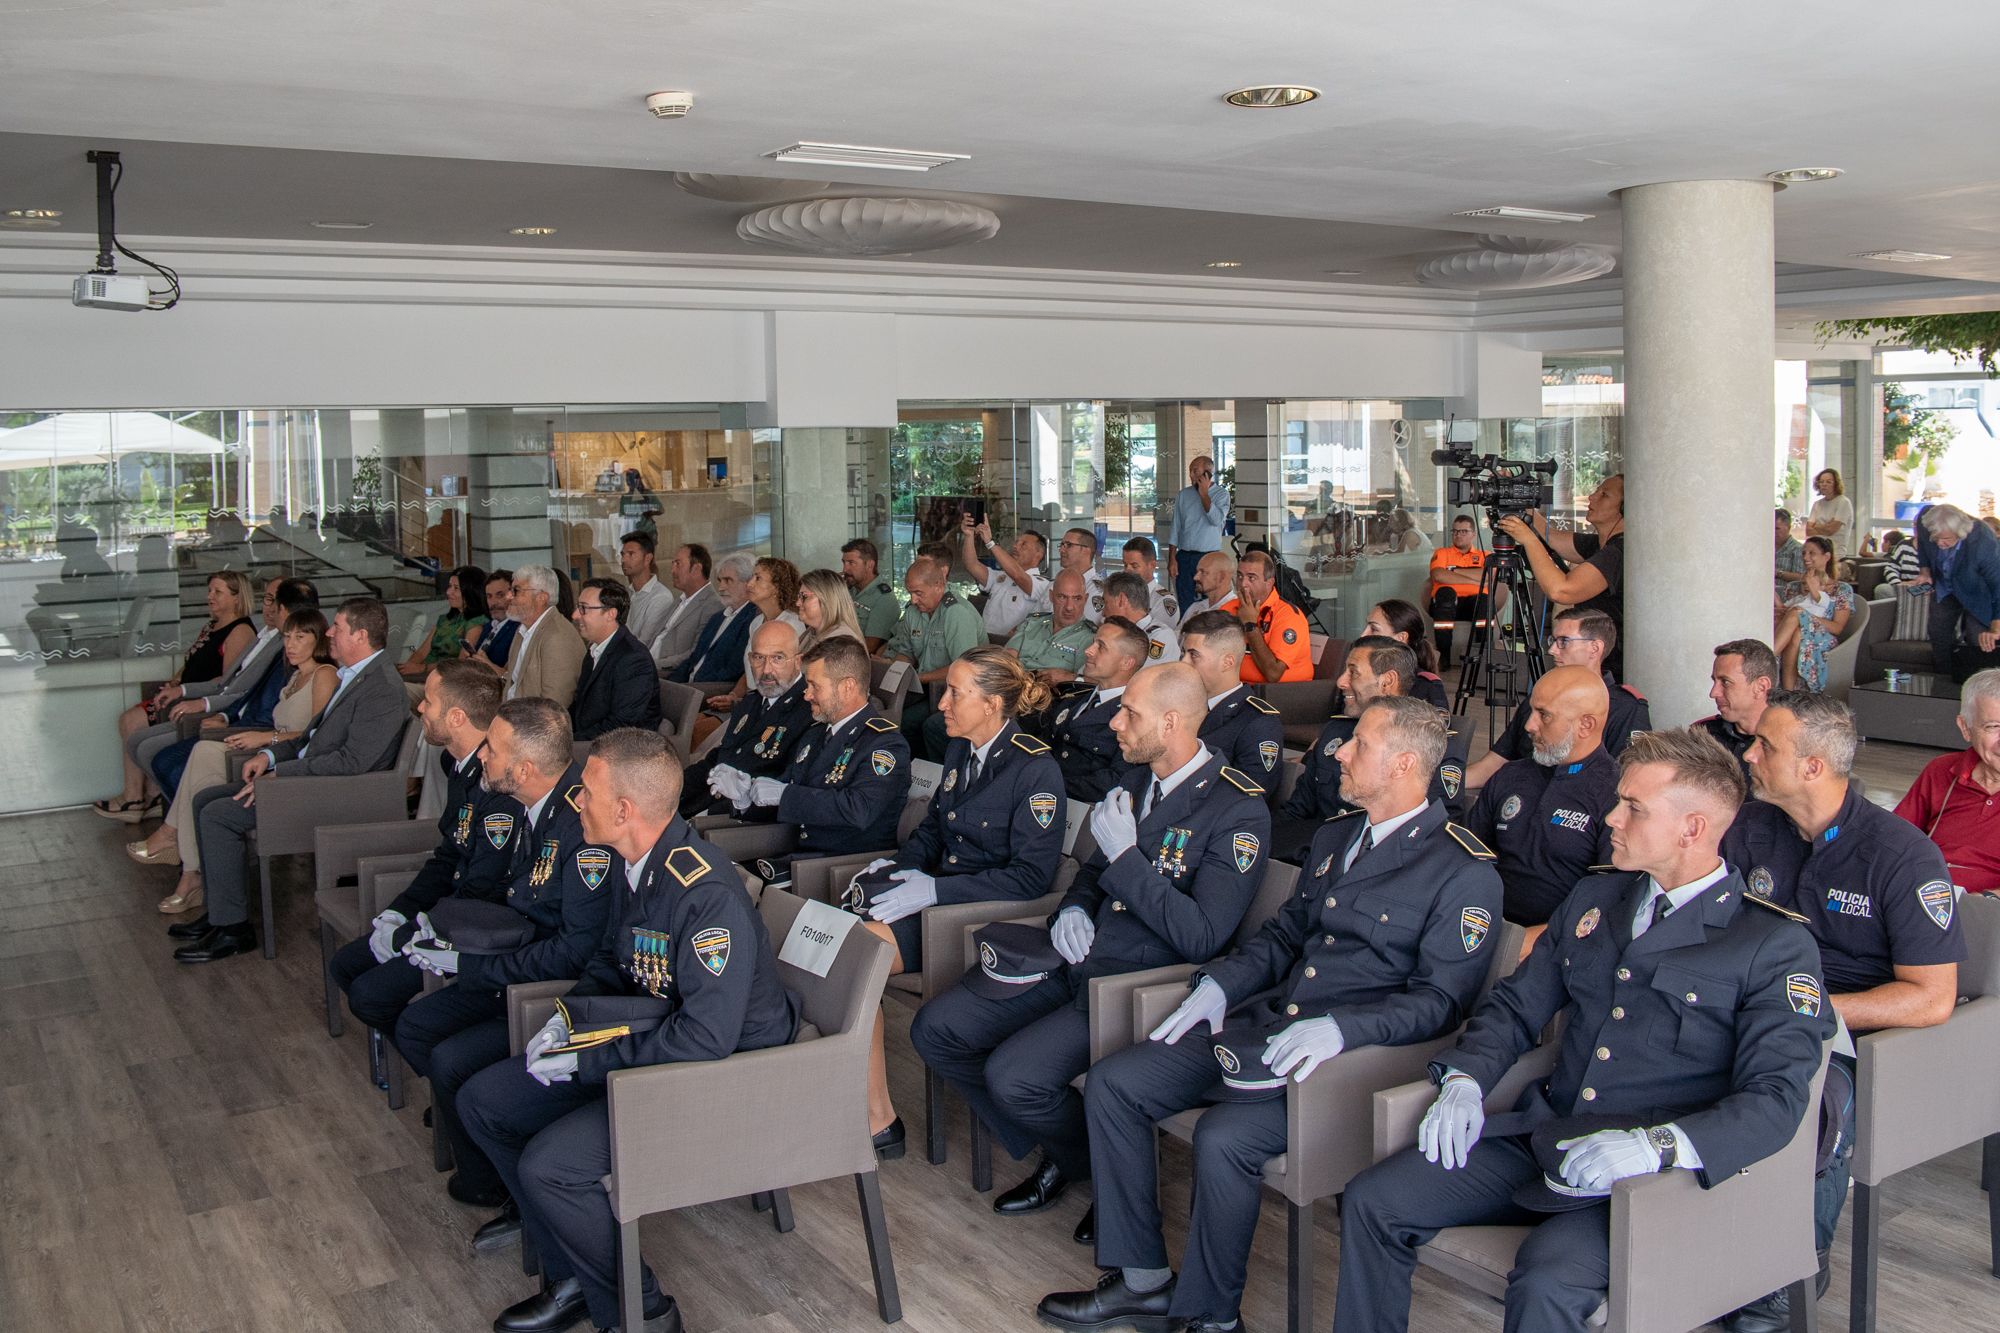 Así ha sido la entrega de medallas para premiar la labor de tres policías de Formentera